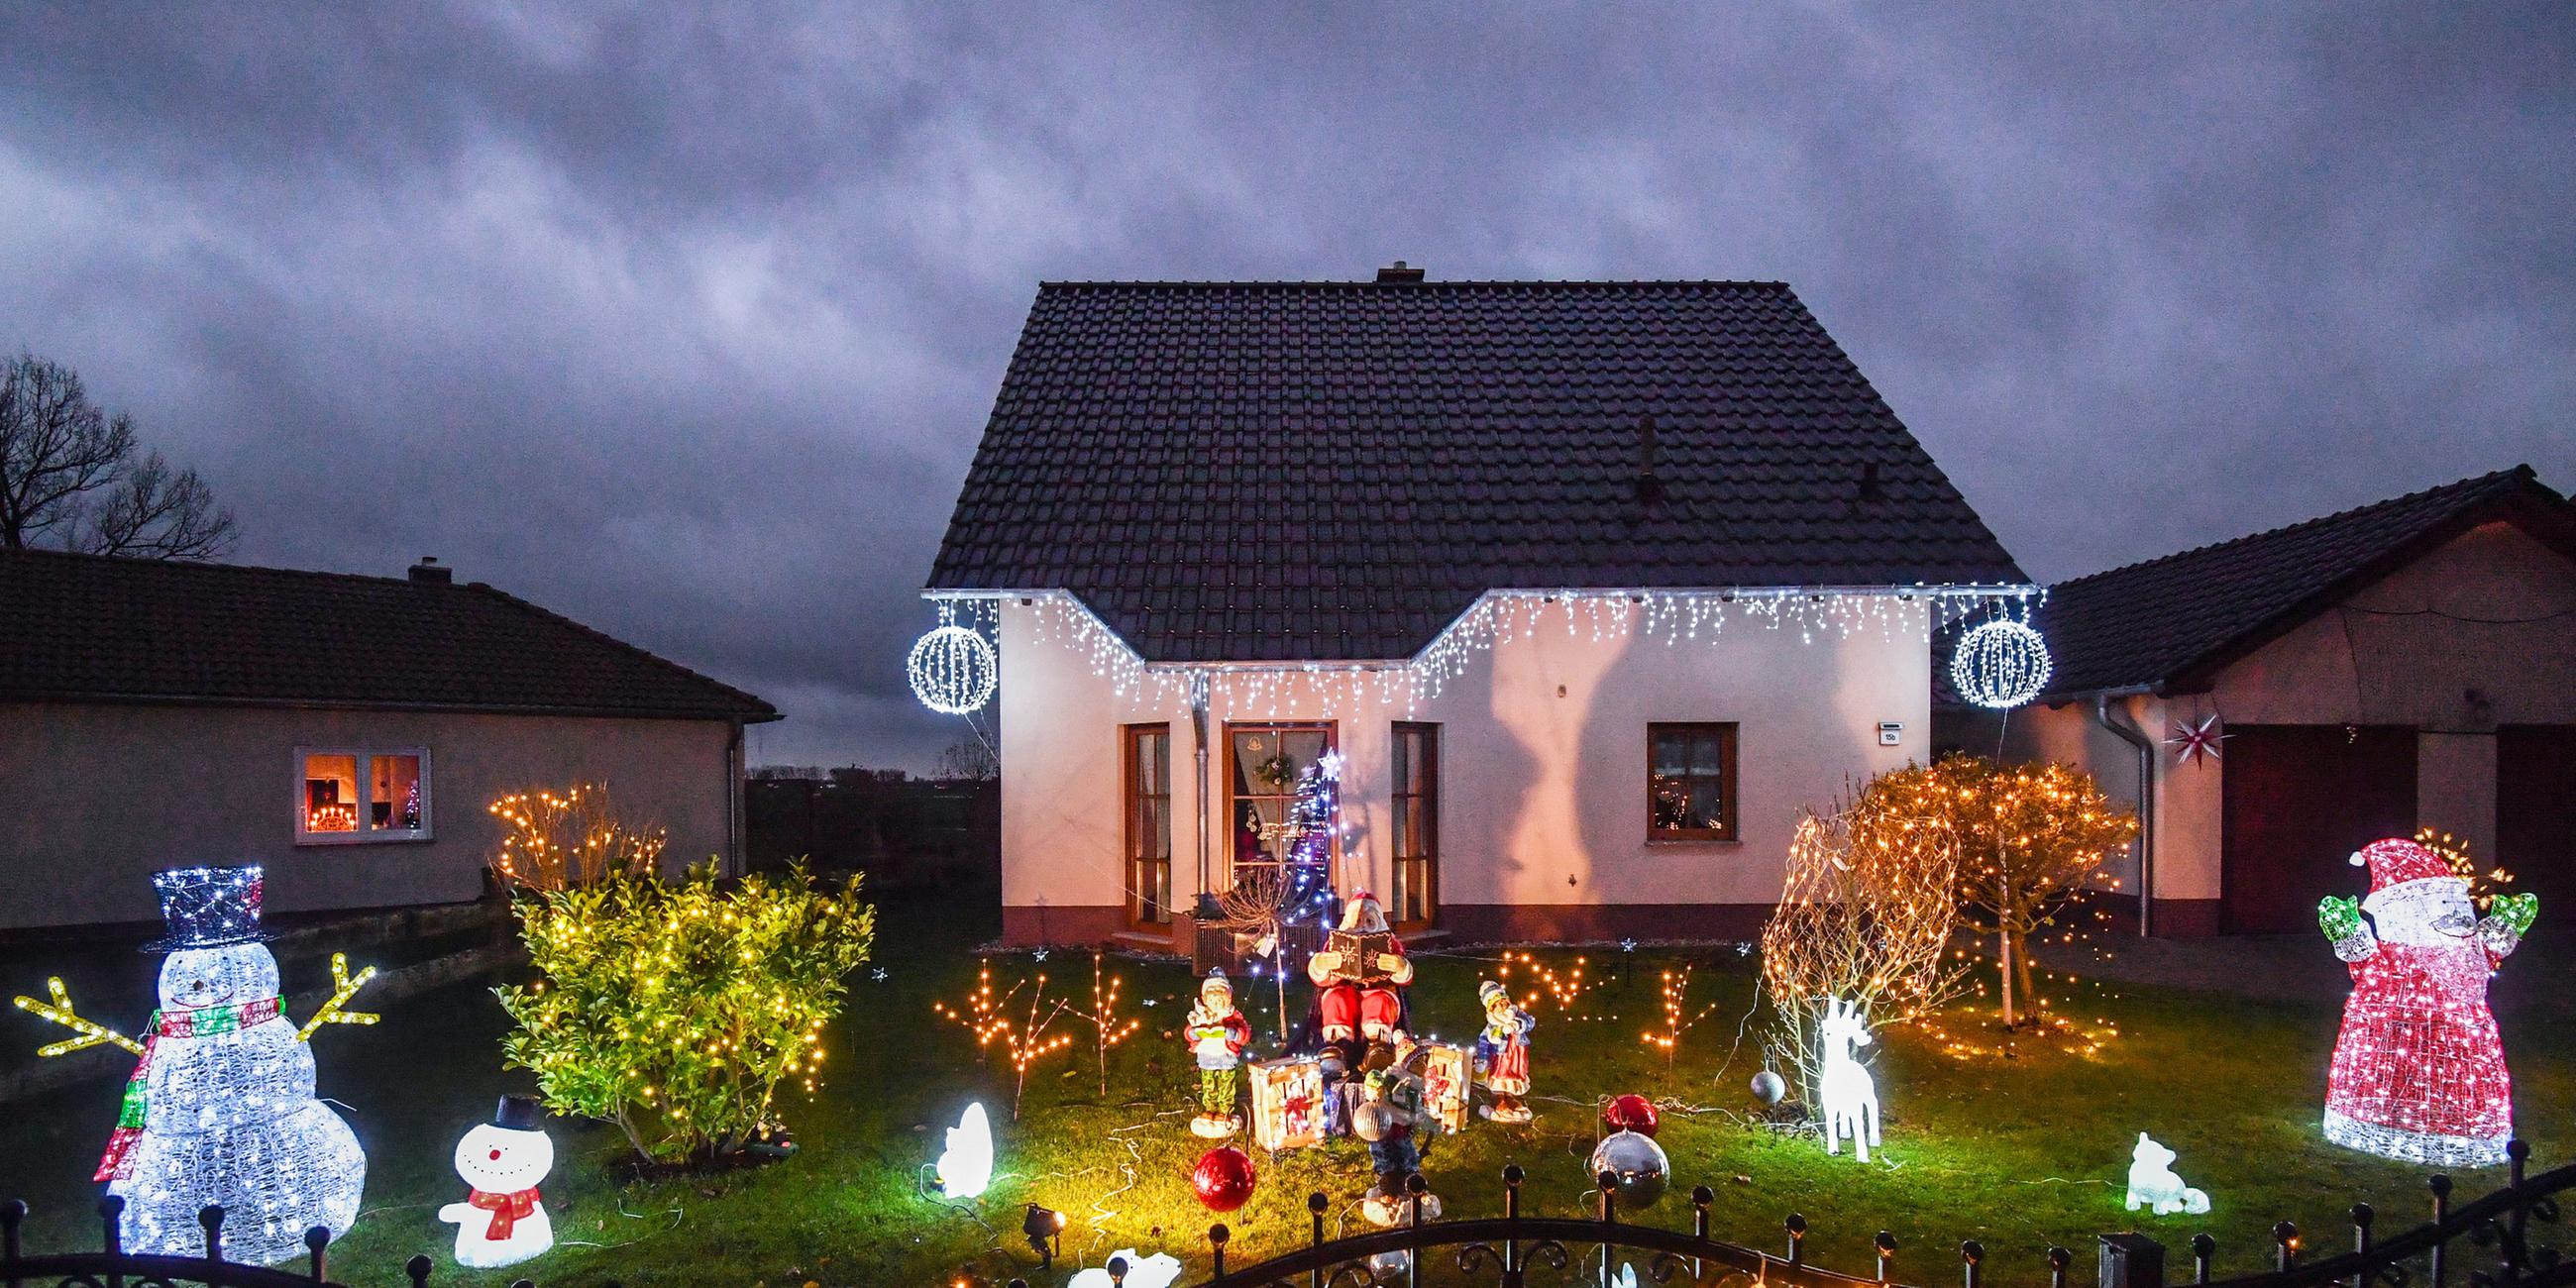 Beleuchtete Weihnachtsdekoration und der Schriftzug "Frohes Fest" erhellen am Abend des 05.12.2017 einen Garten mit Einfamilienhaus in Pillgram